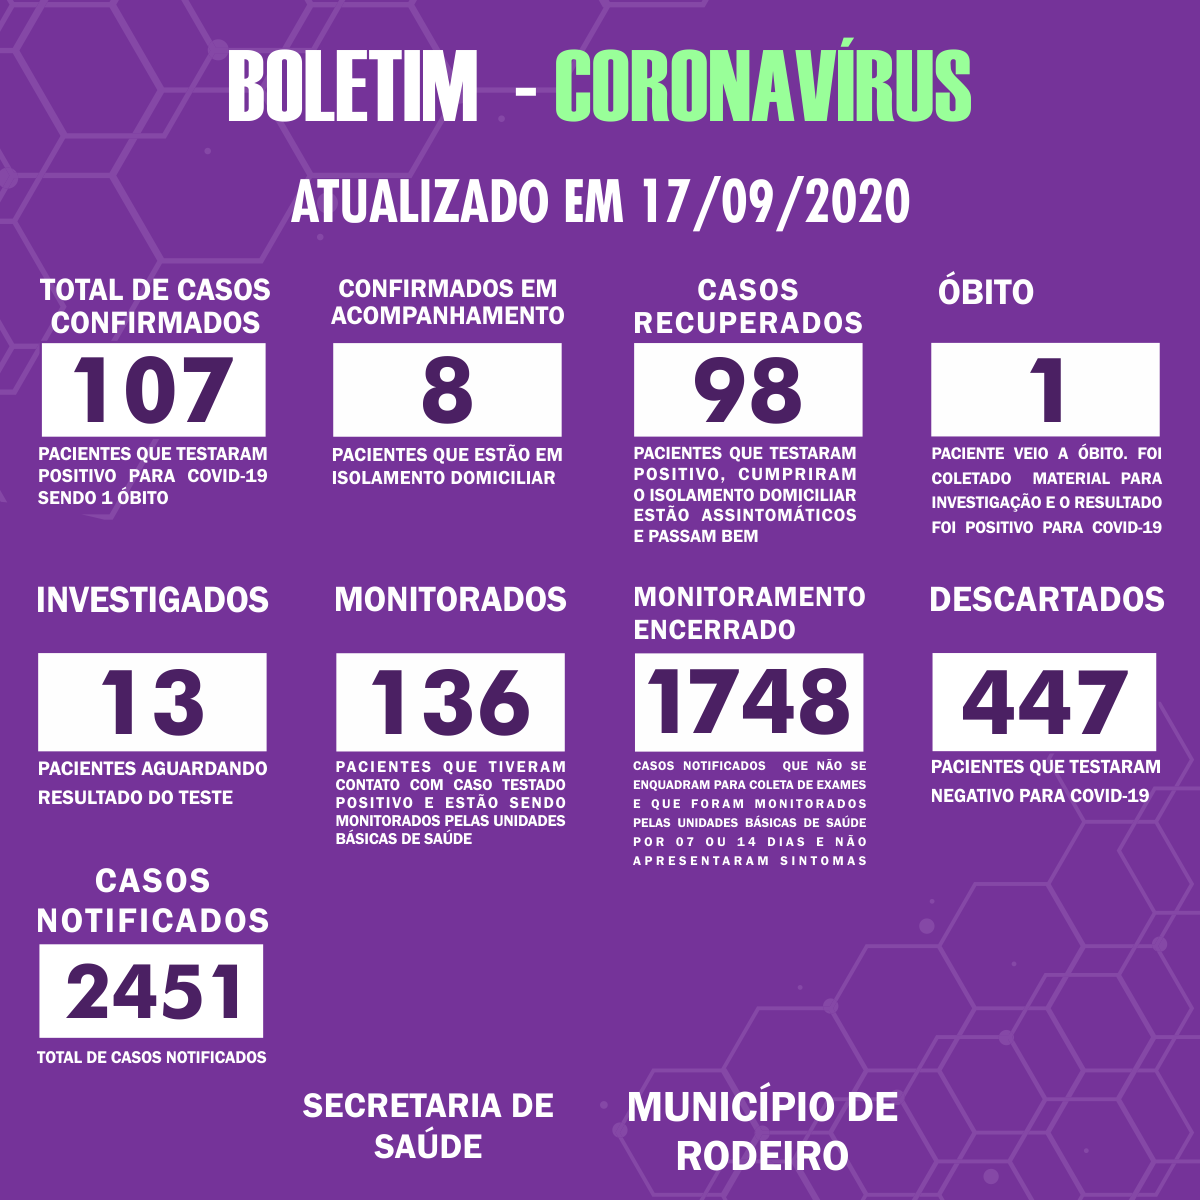 Boletim Epidemiológico do Município de Rodeiro sobre coronavírus, atualizado em 17/09/2020